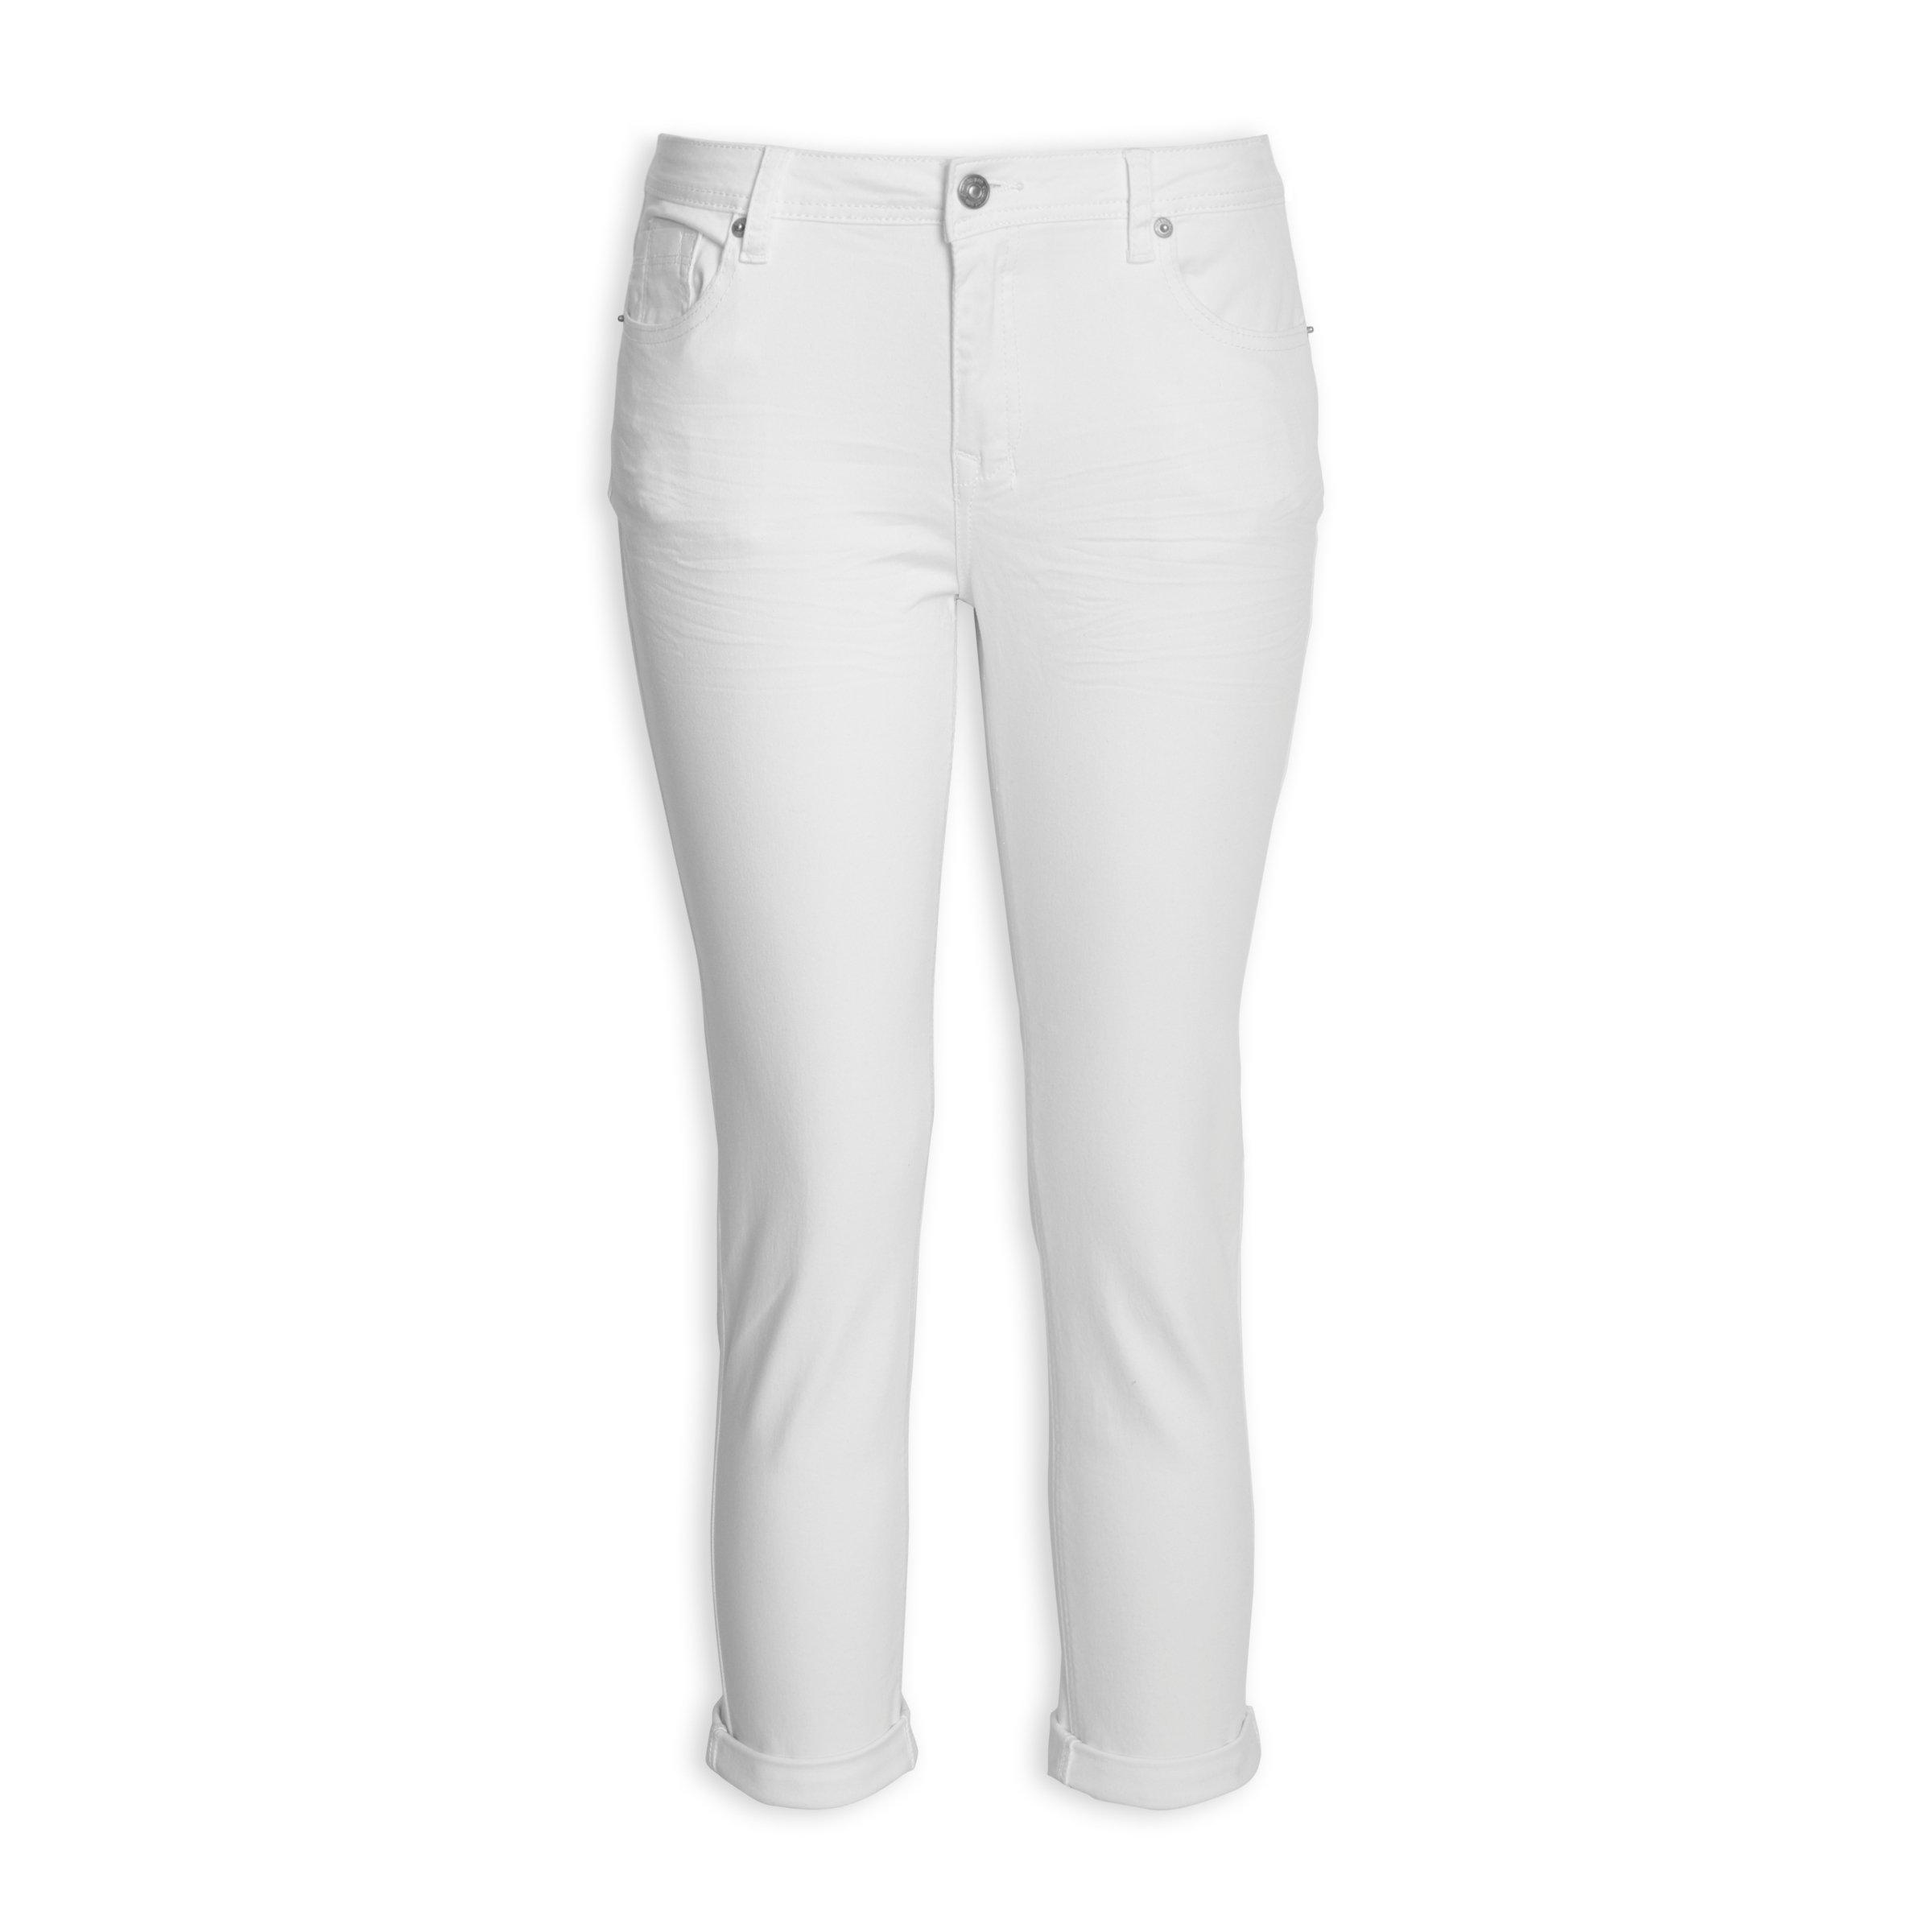 Buy OBR White Relaxed Capri Jeans Online | Truworths